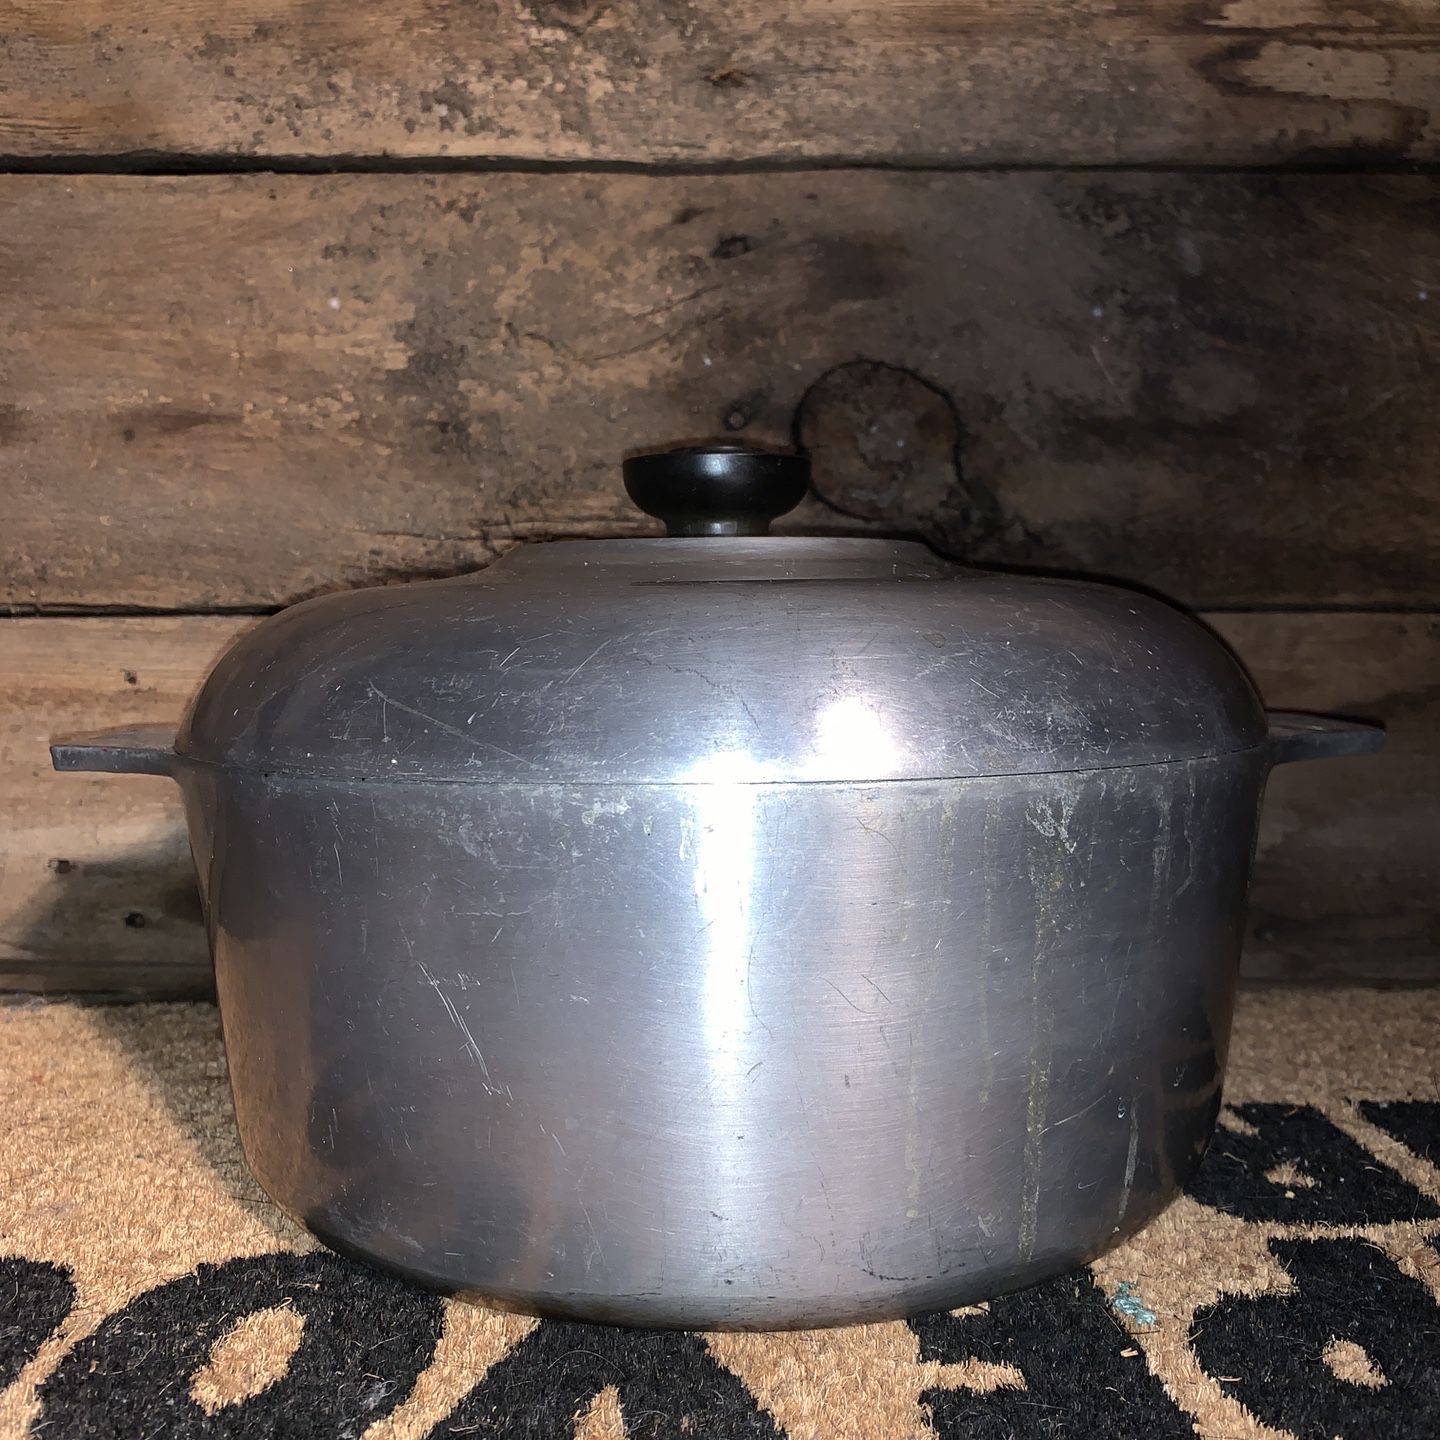 Vintage Magnalite Professional GHC 5 Qt./4.5 Liter Anodized Aluminum Stock  Pot 